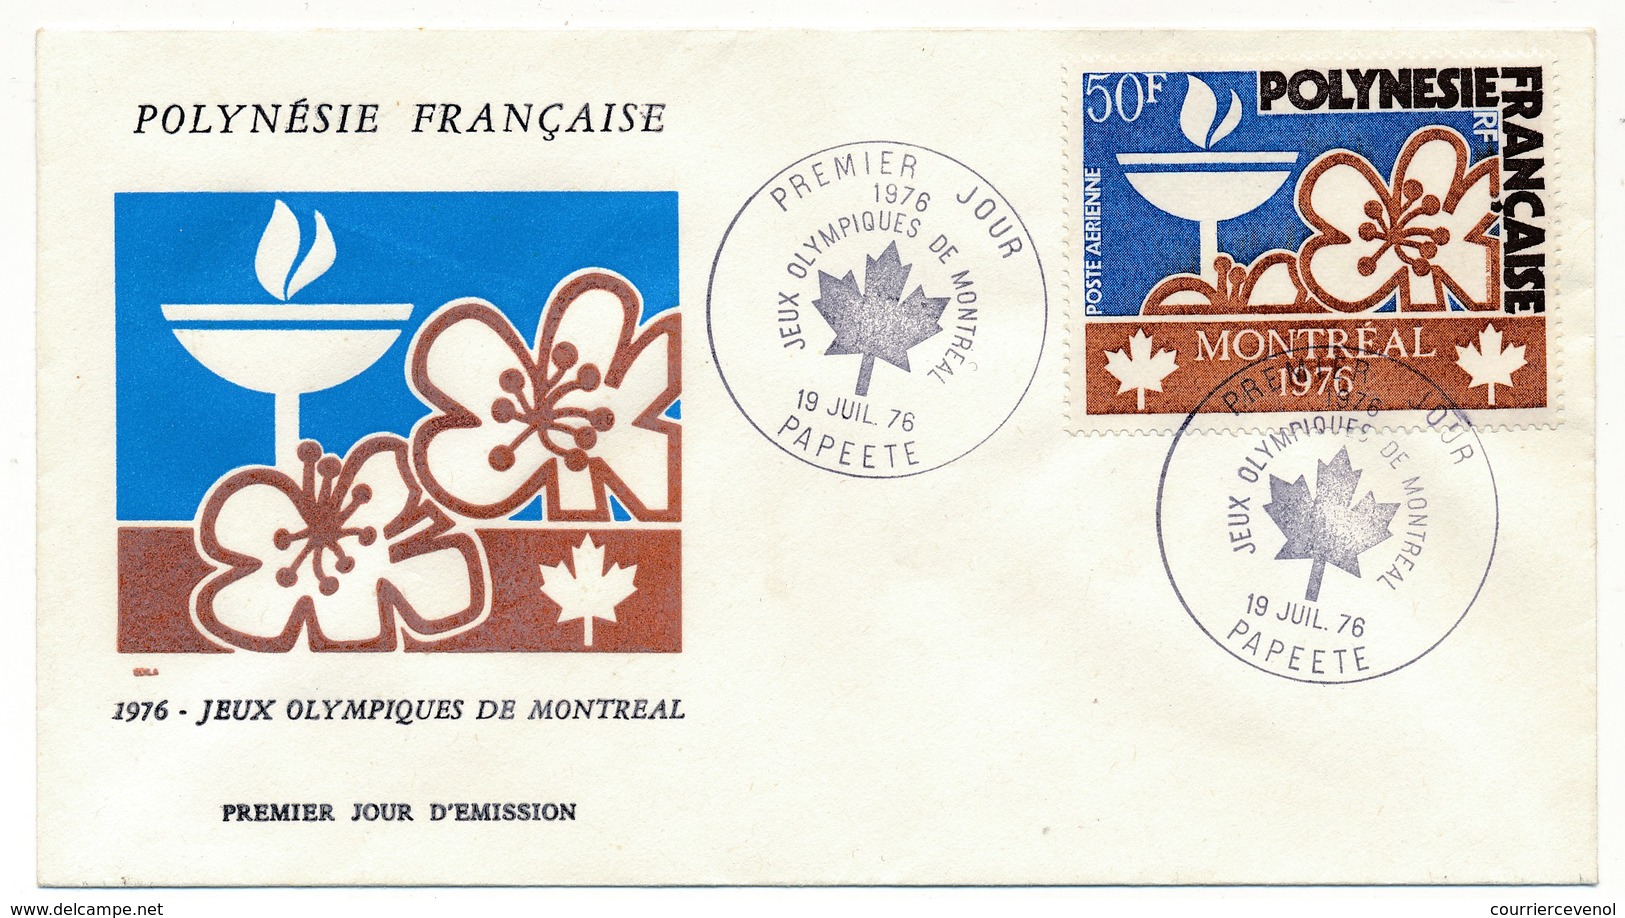 POLYNESIE FRANCAISE - 3 FDC - Jeux Olympiques De Montréal - 1976 - FDC